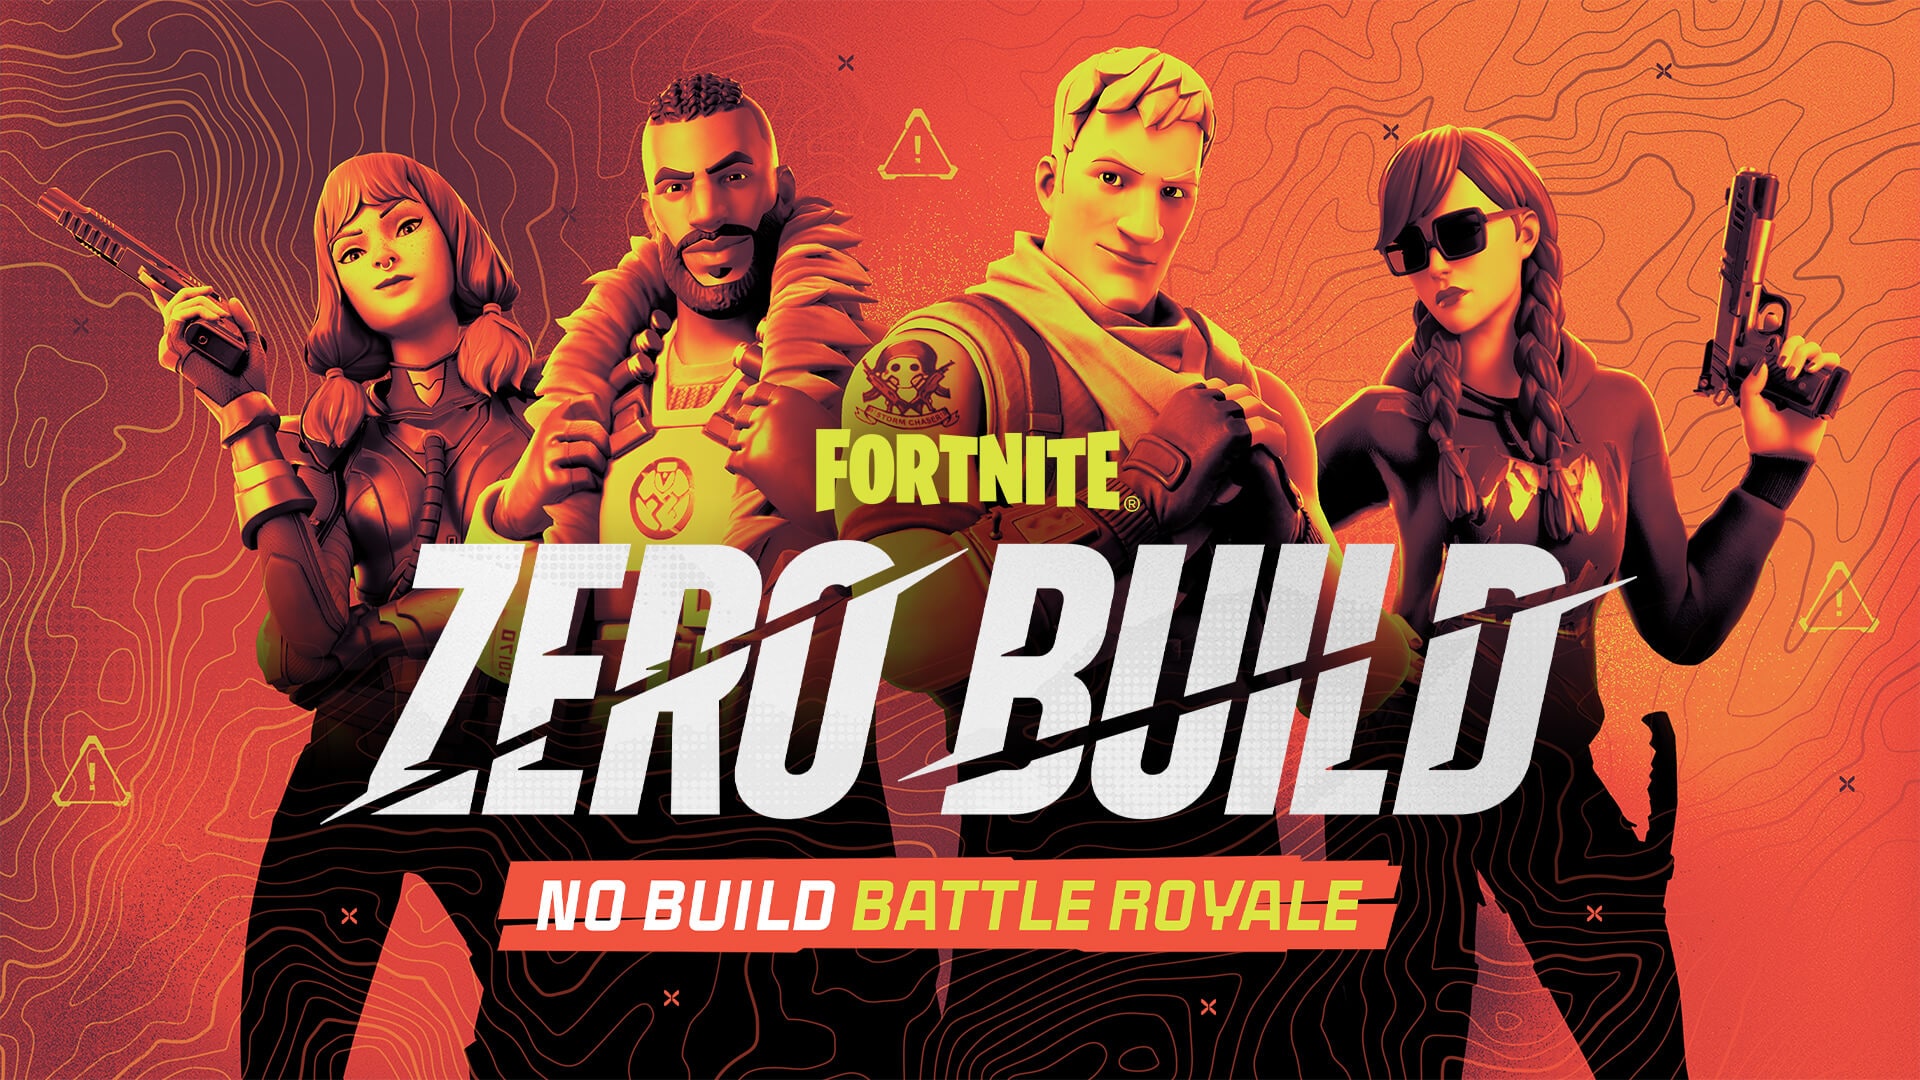 Fortnite Zero Build - NO BUILD BATTLE ROYALE